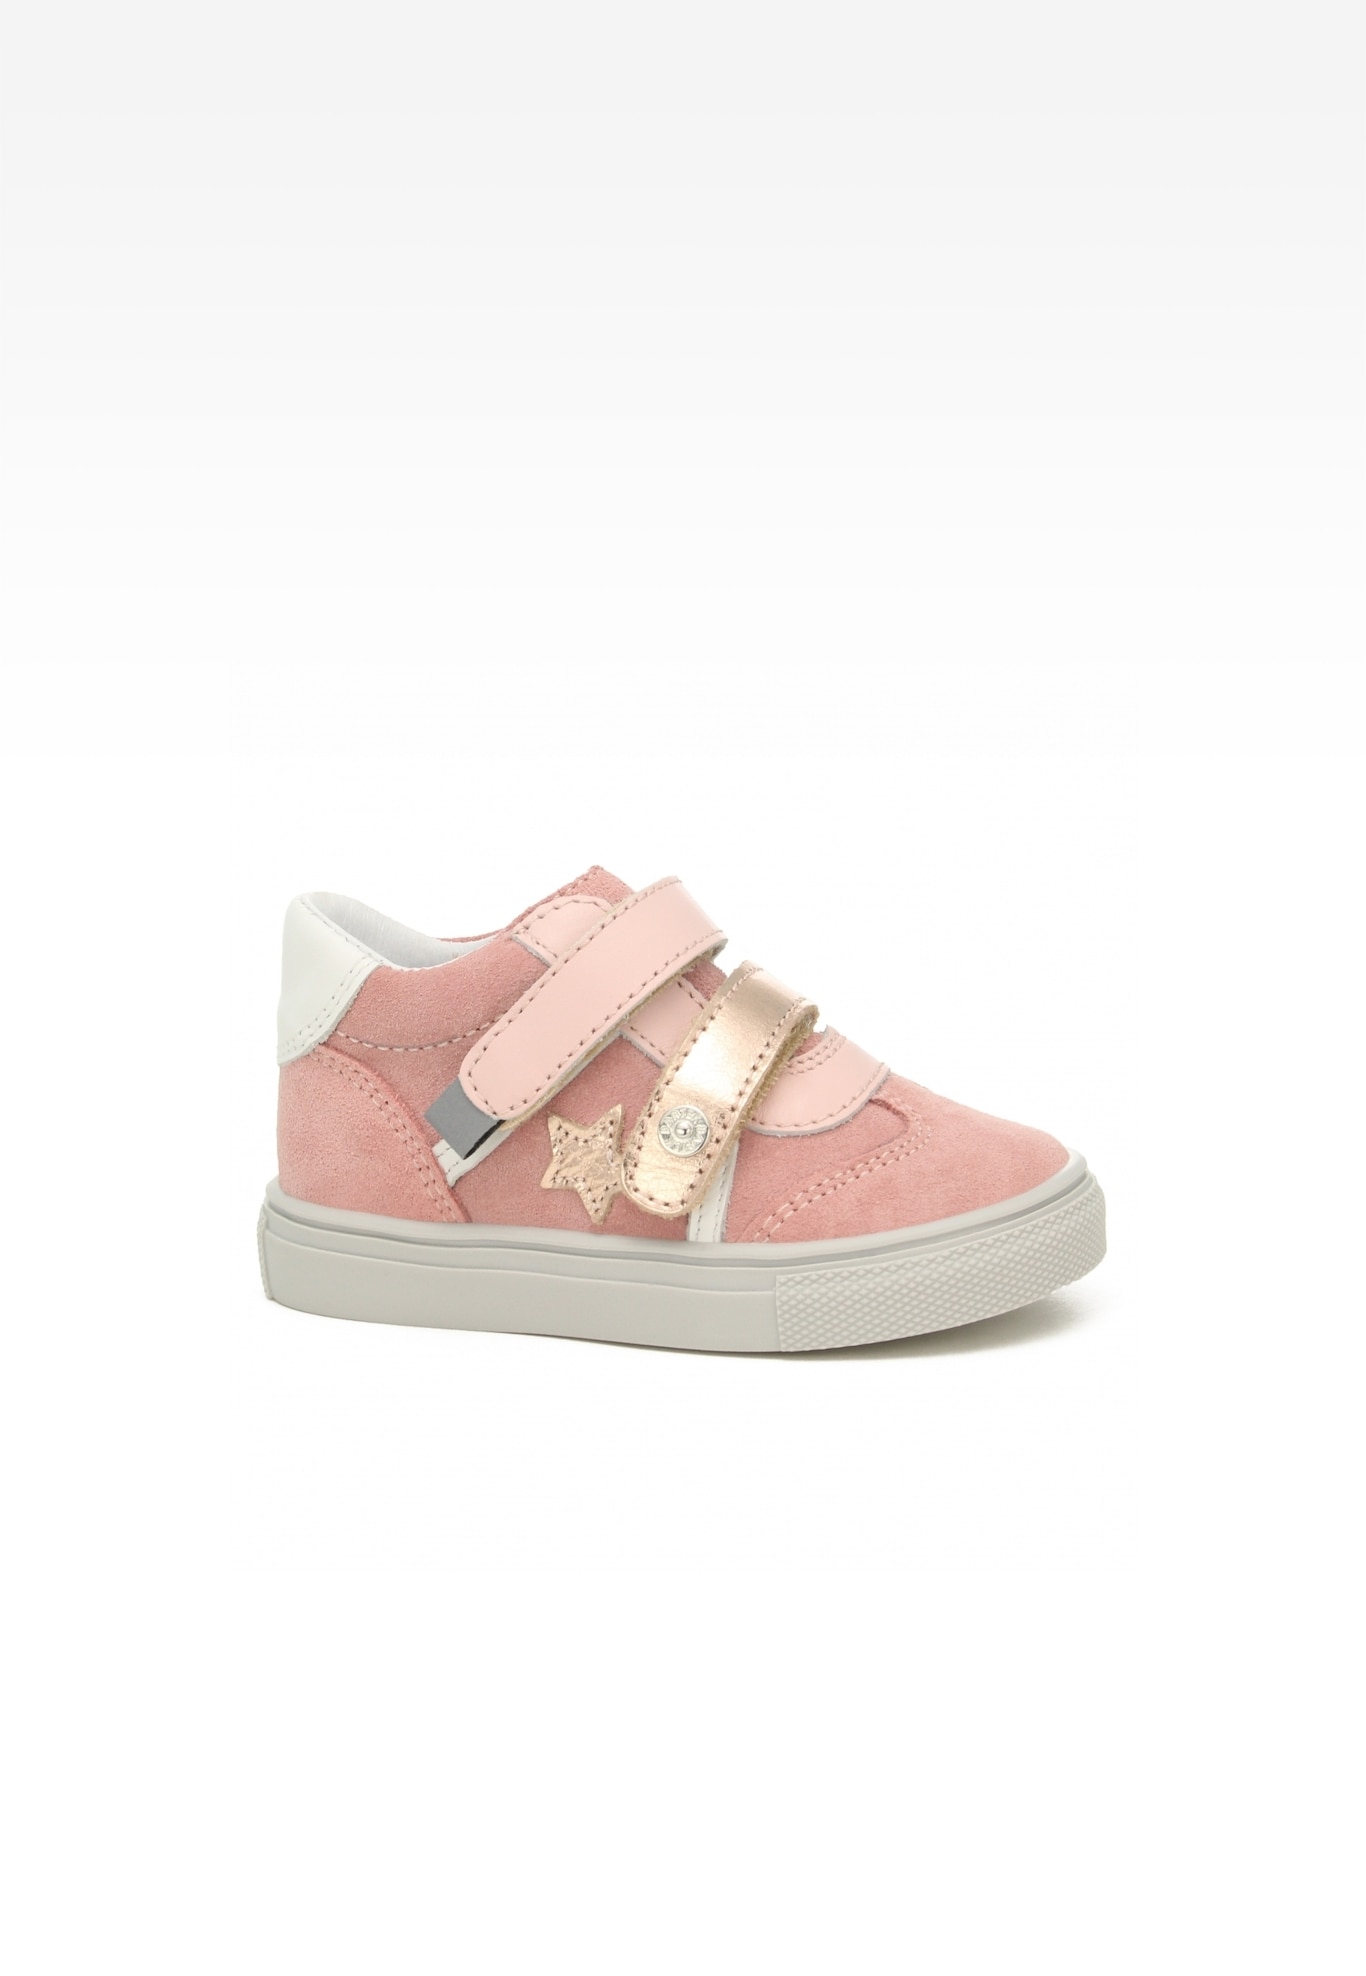 Sneakers BARTEK 114300-10, dla dziewcząt, różowy